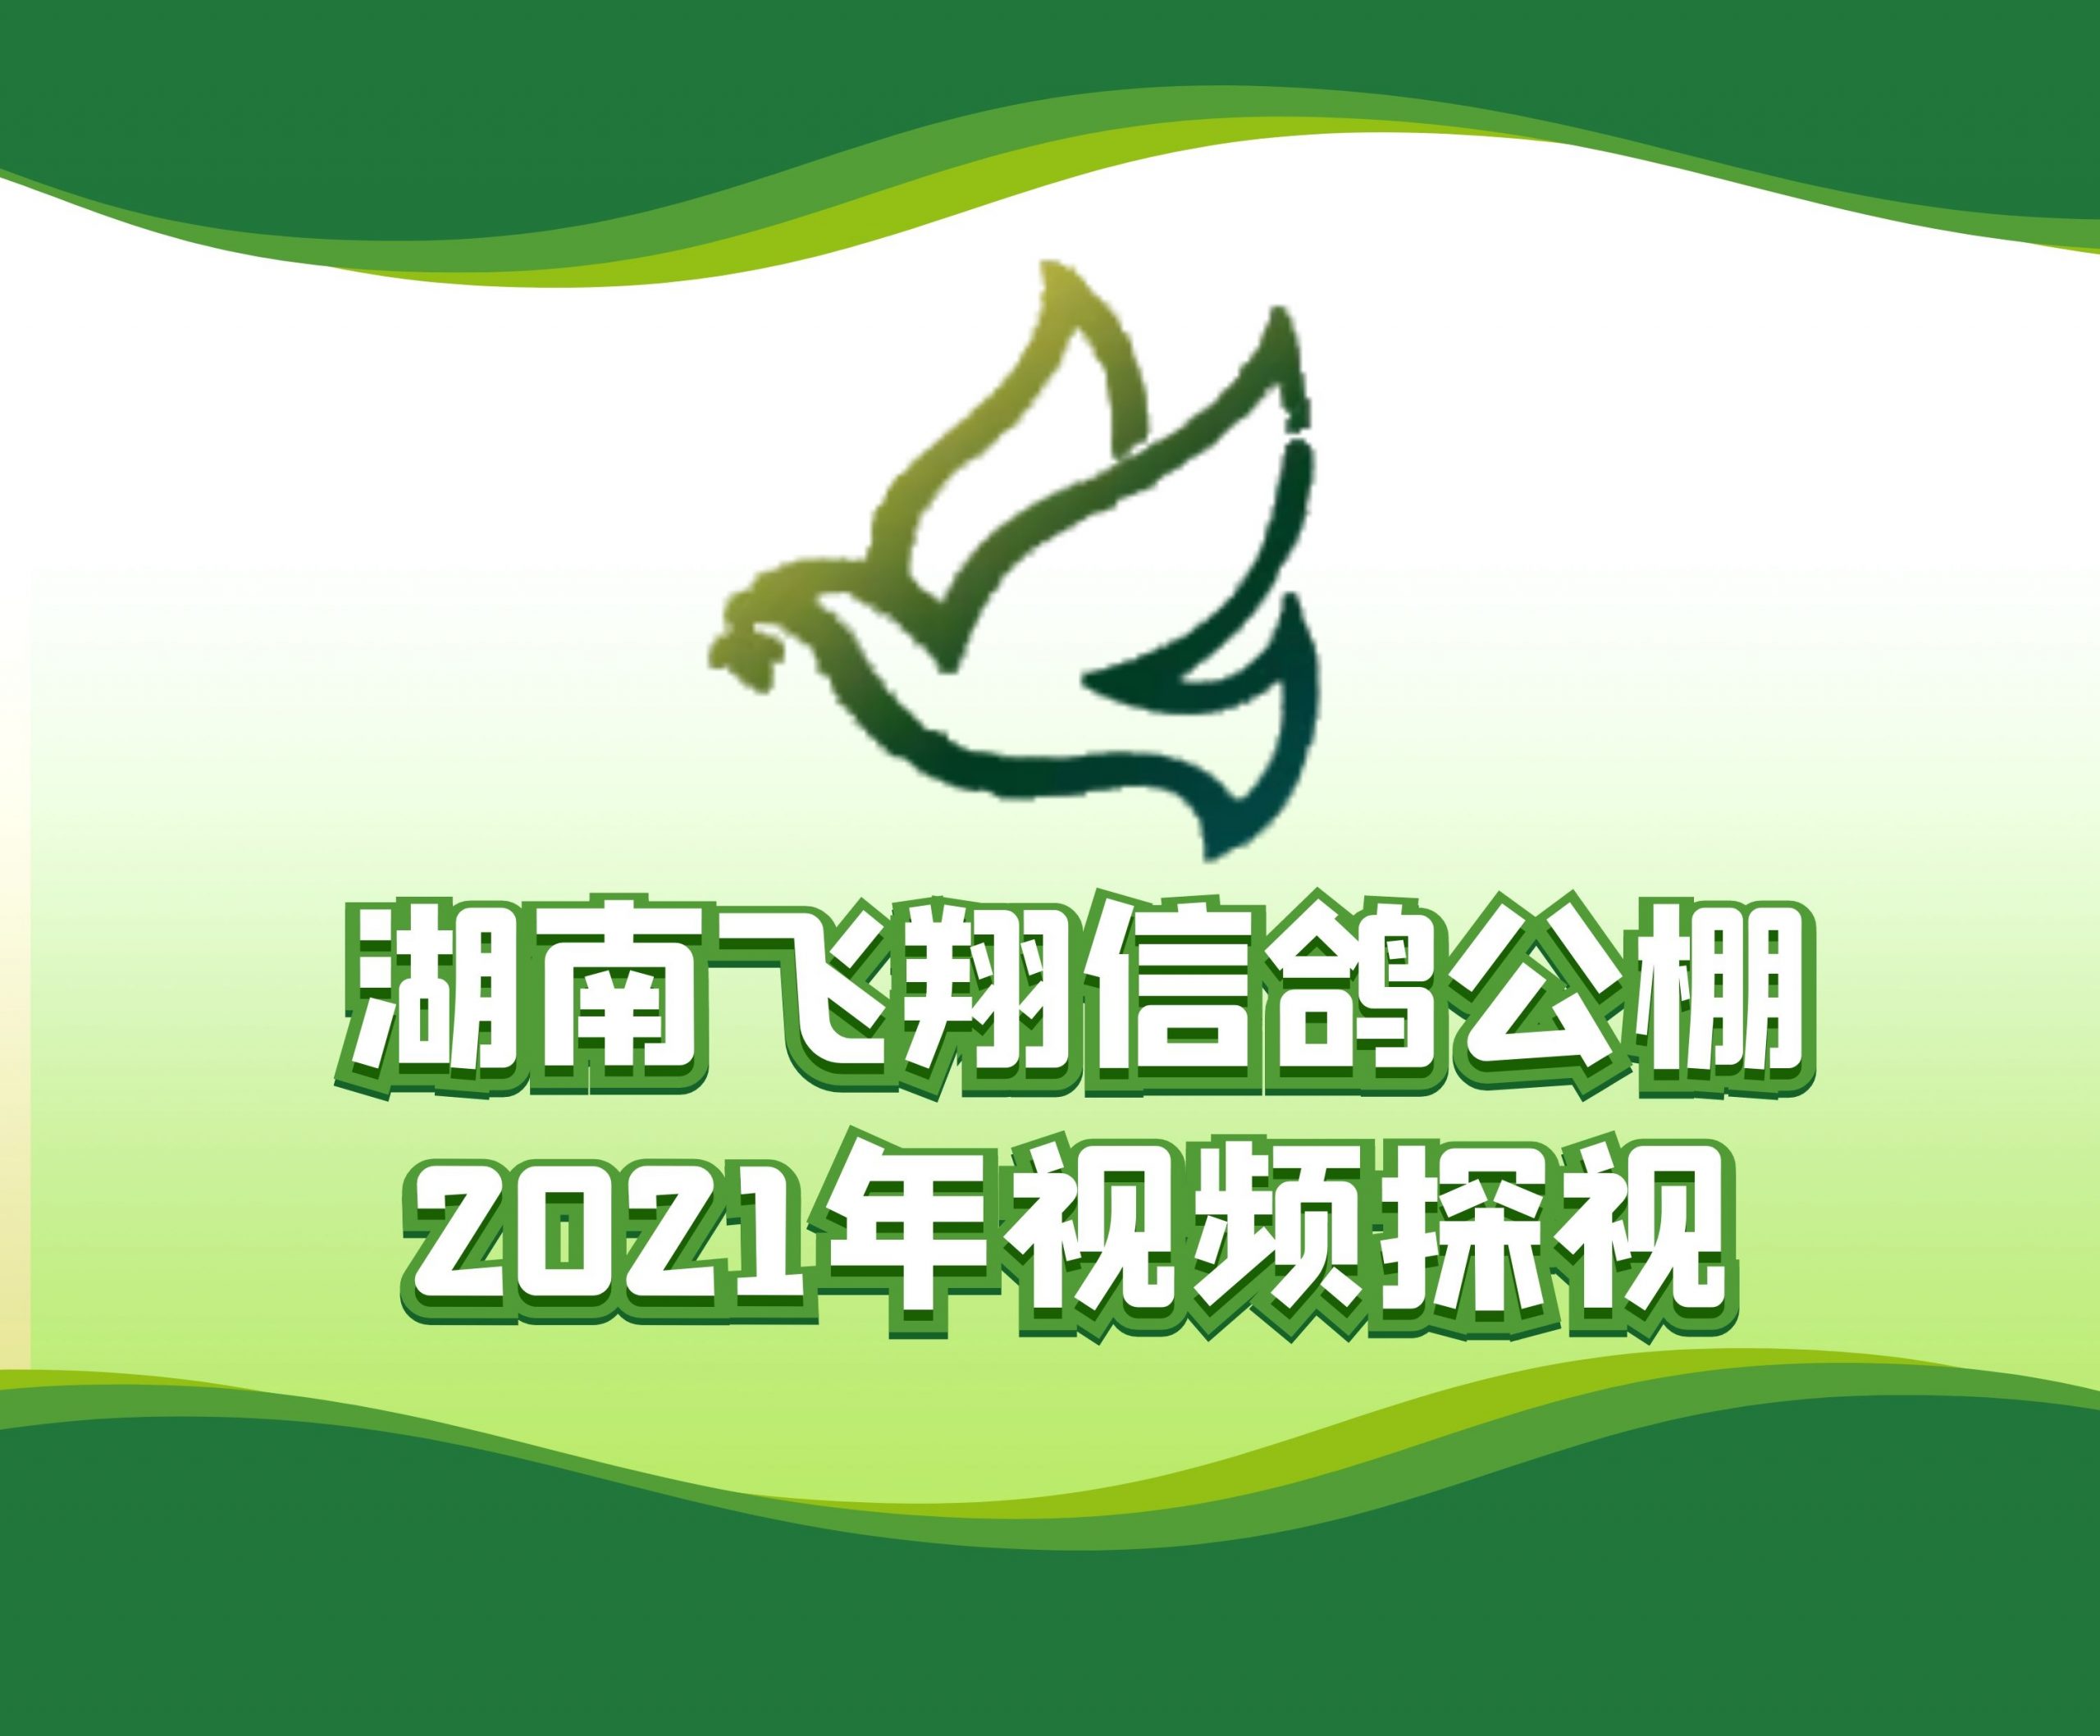 广东省建业竞翔-余银忠-2021-19-0173553